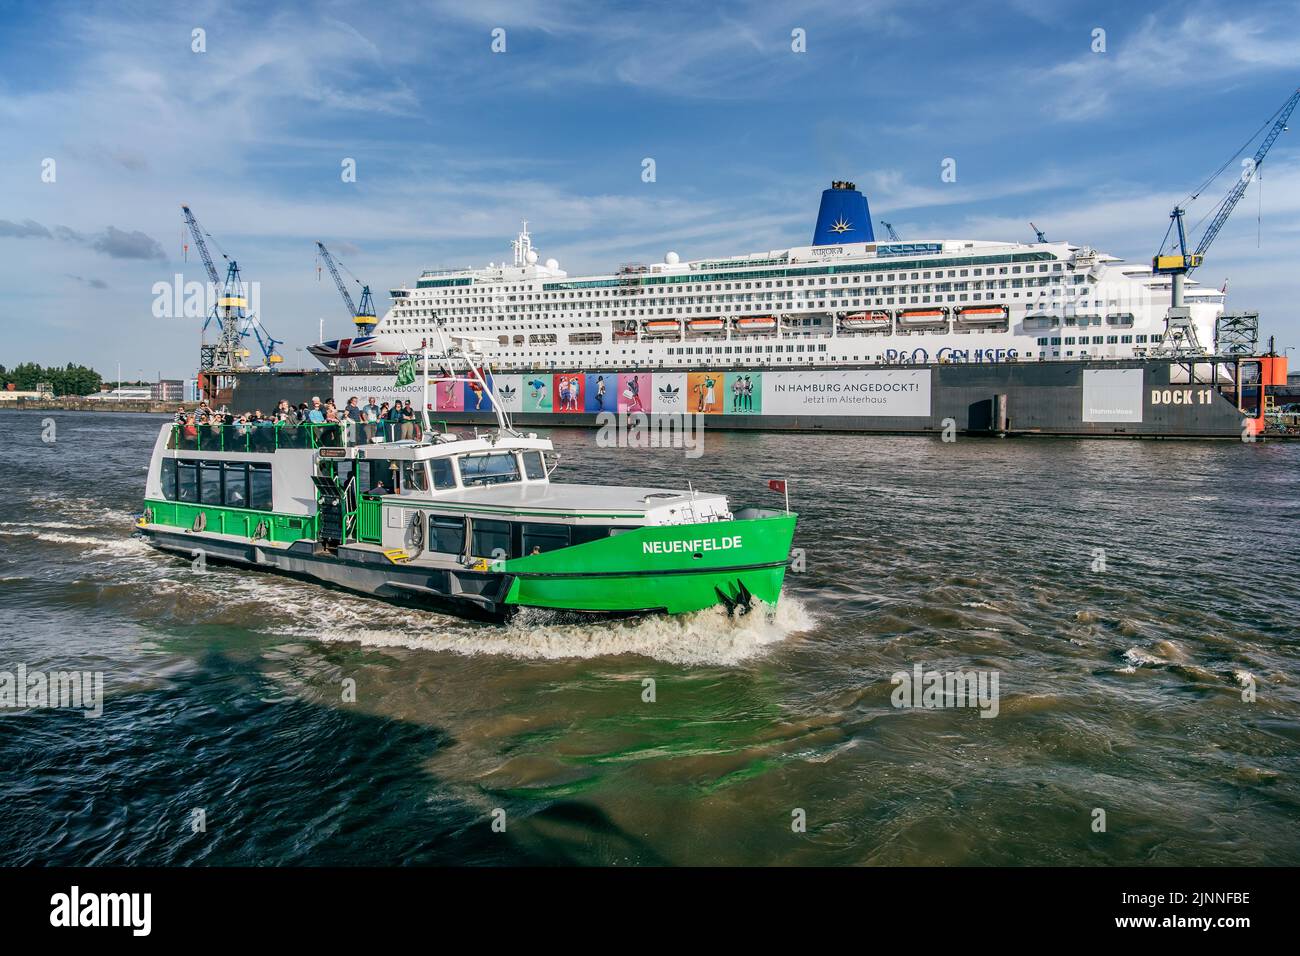 Bateau d'excursion devant le bateau de croisière Aurora en quai sec sur l'Elbe dans le port de Hambourg, Hambourg, Land Hambourg, Allemagne du Nord, Germa Banque D'Images